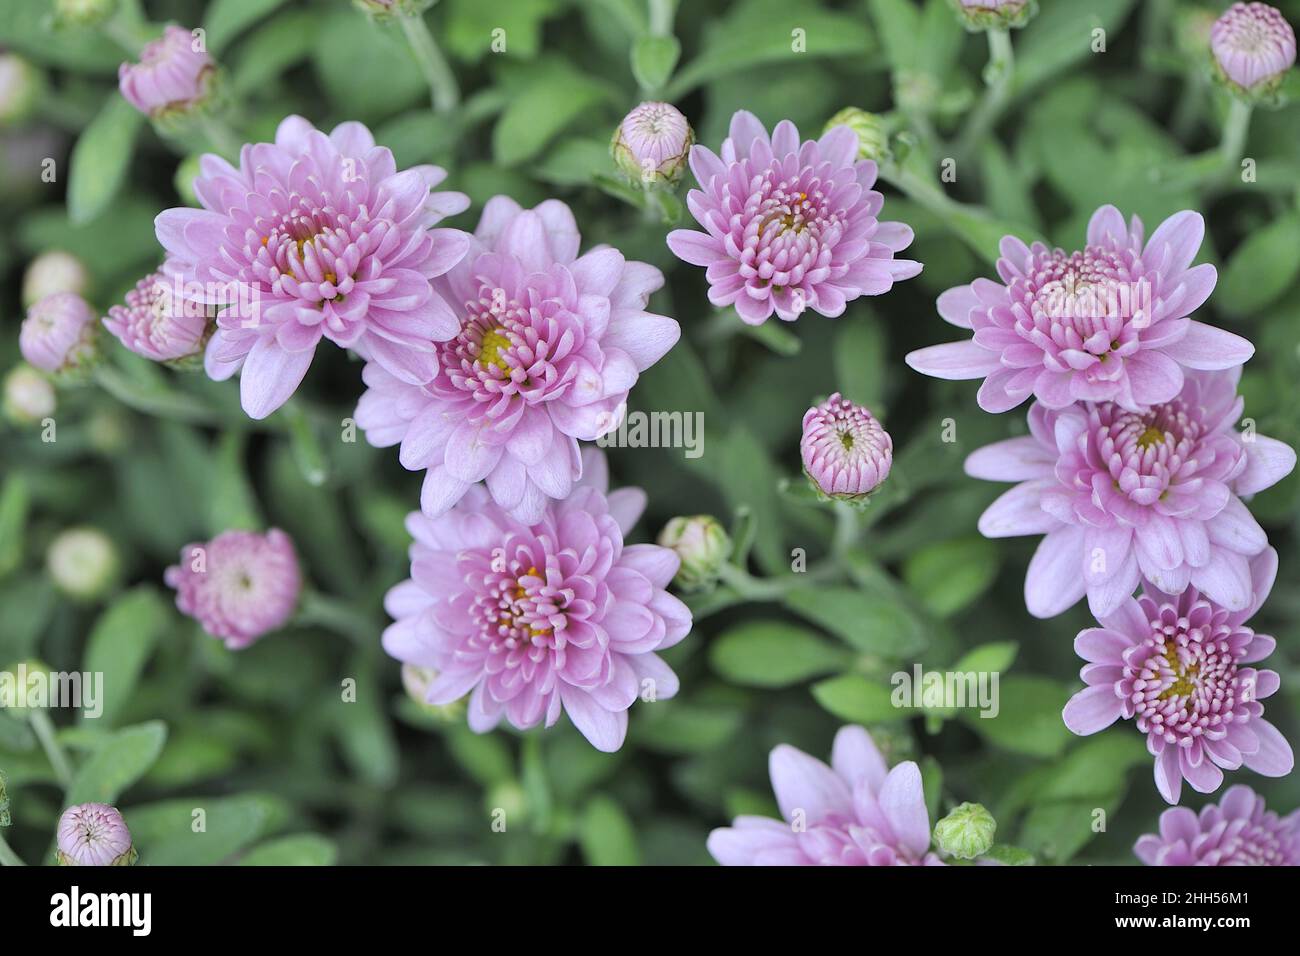 Jardin moins dur maman - petite chrysanthème (Chrysanthemum sp) floraison en automne Belgique Banque D'Images